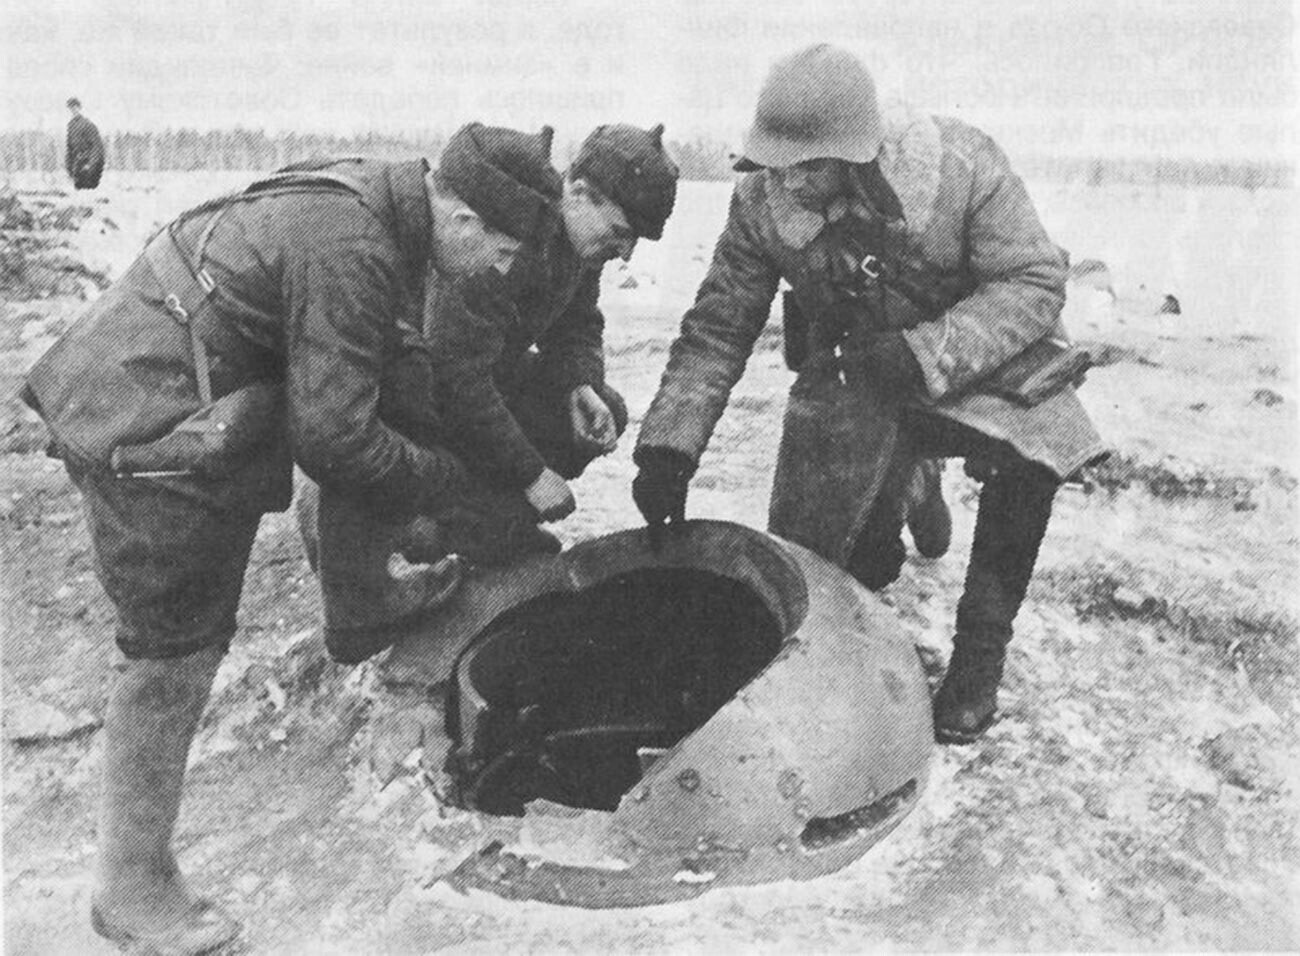 Tentara Soviet di dekat kotak obat Finlandia yang hancur.